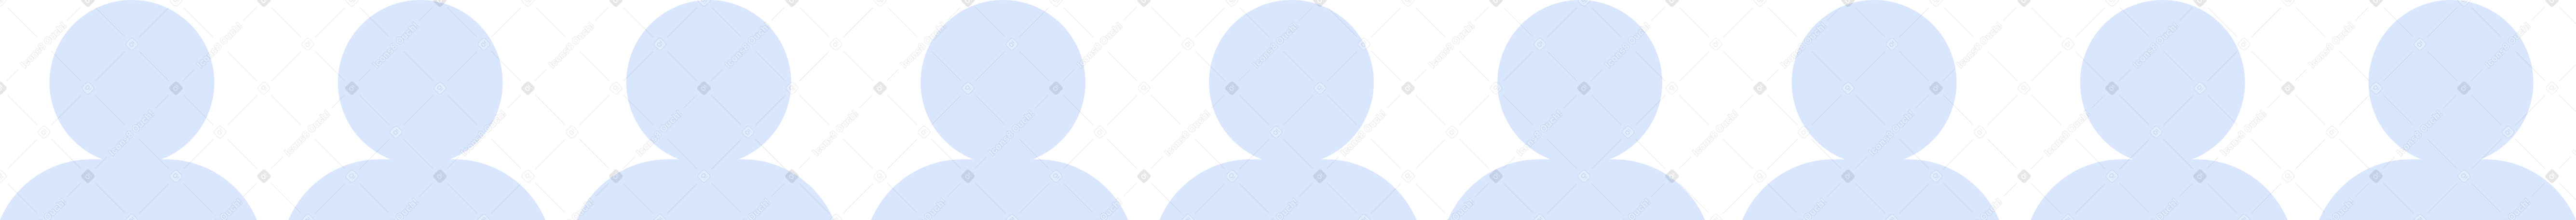 crowd Illustration in PNG, SVG